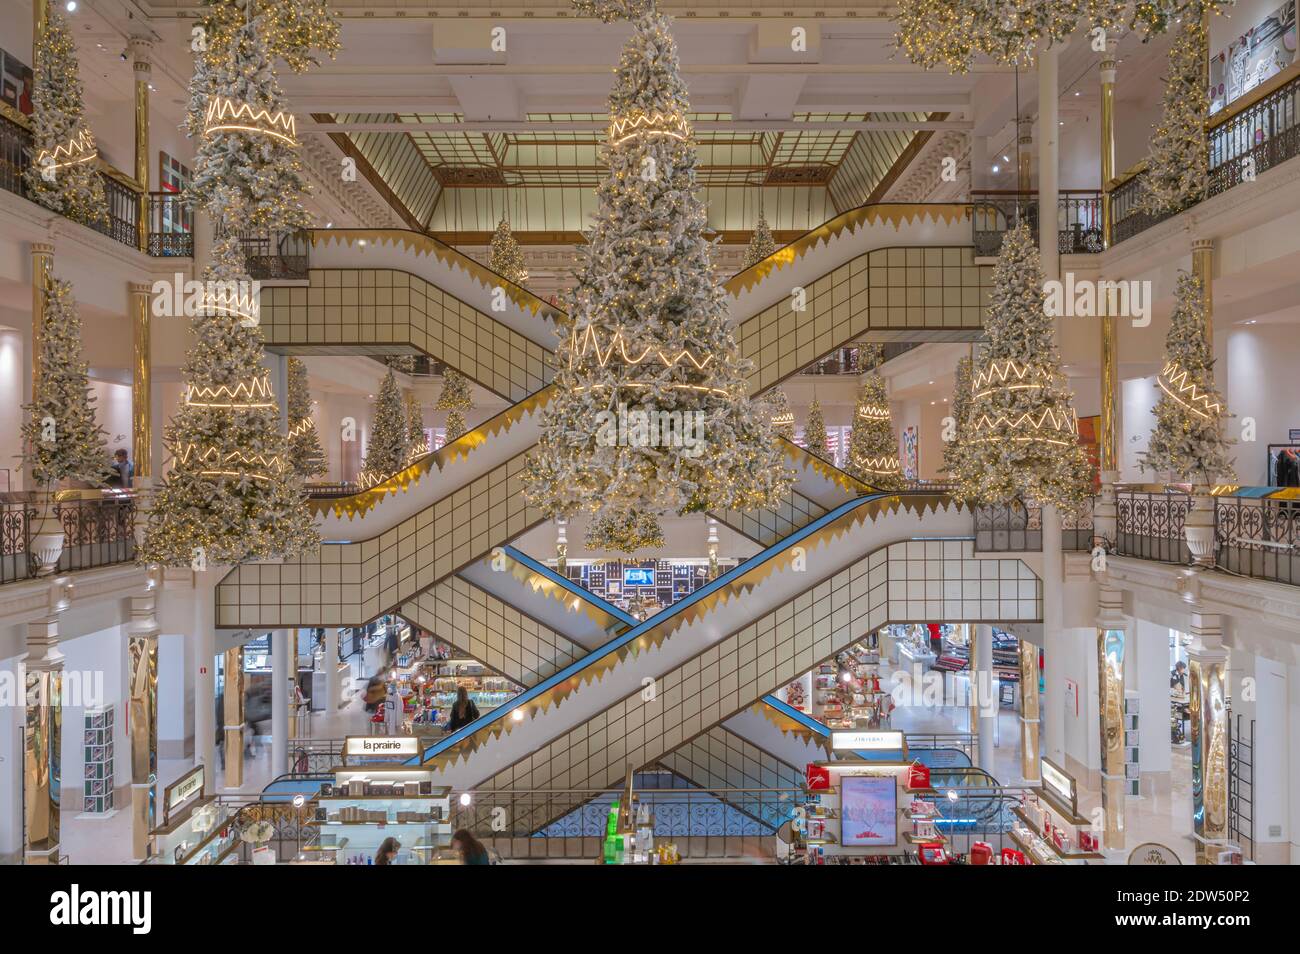 Le Bon Marche Department store, Christmas decoration, Paris, France,t he  iconic central escalators designed by Andree Putman Stock Photo - Alamy